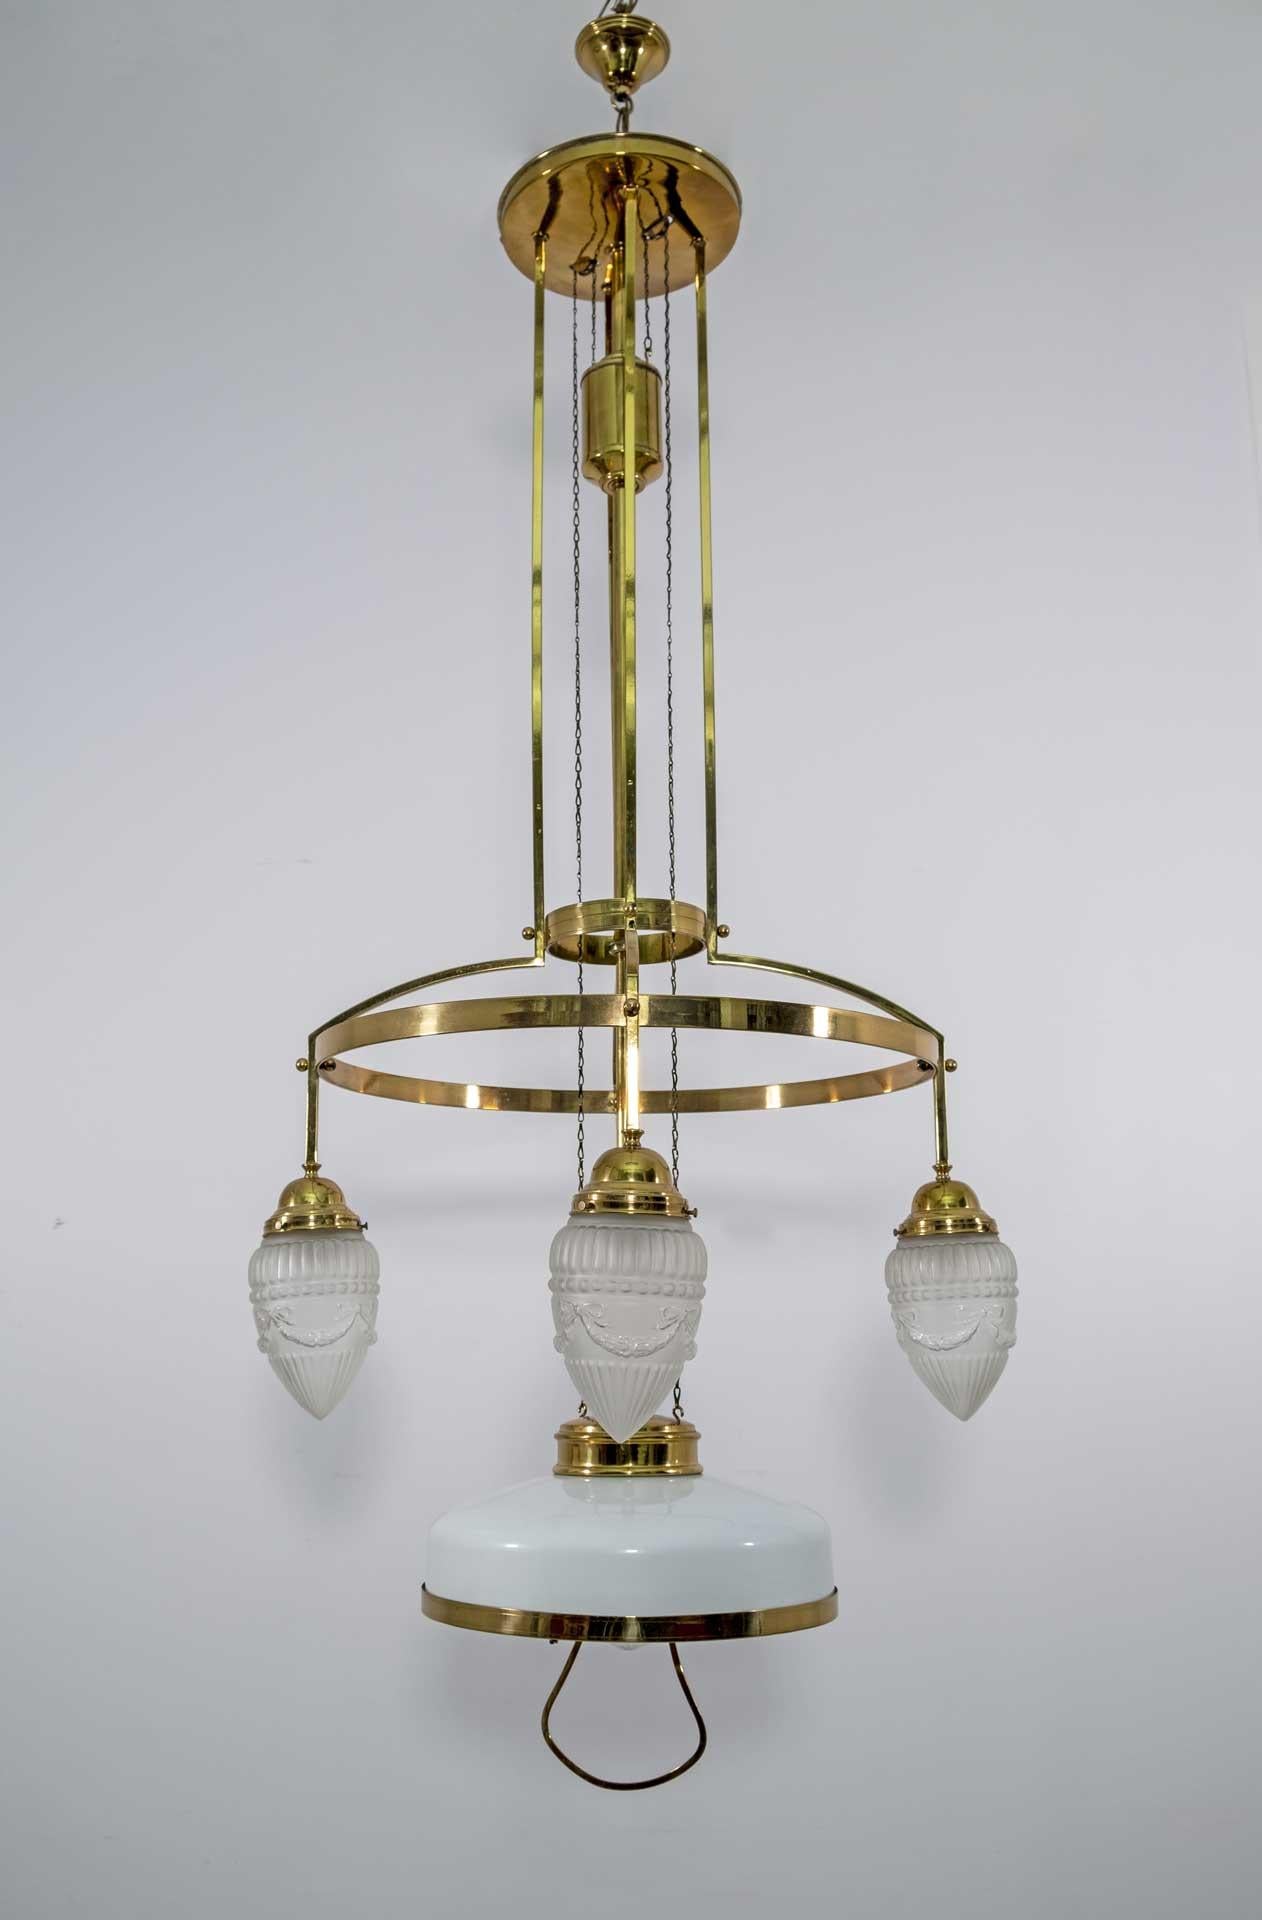 Lustre Jugendstil réglable à 5 lampes avec verre opalin viennois d'origine, vers 1920
Hauteur normale 135cm extensible jusqu'à 175cm.